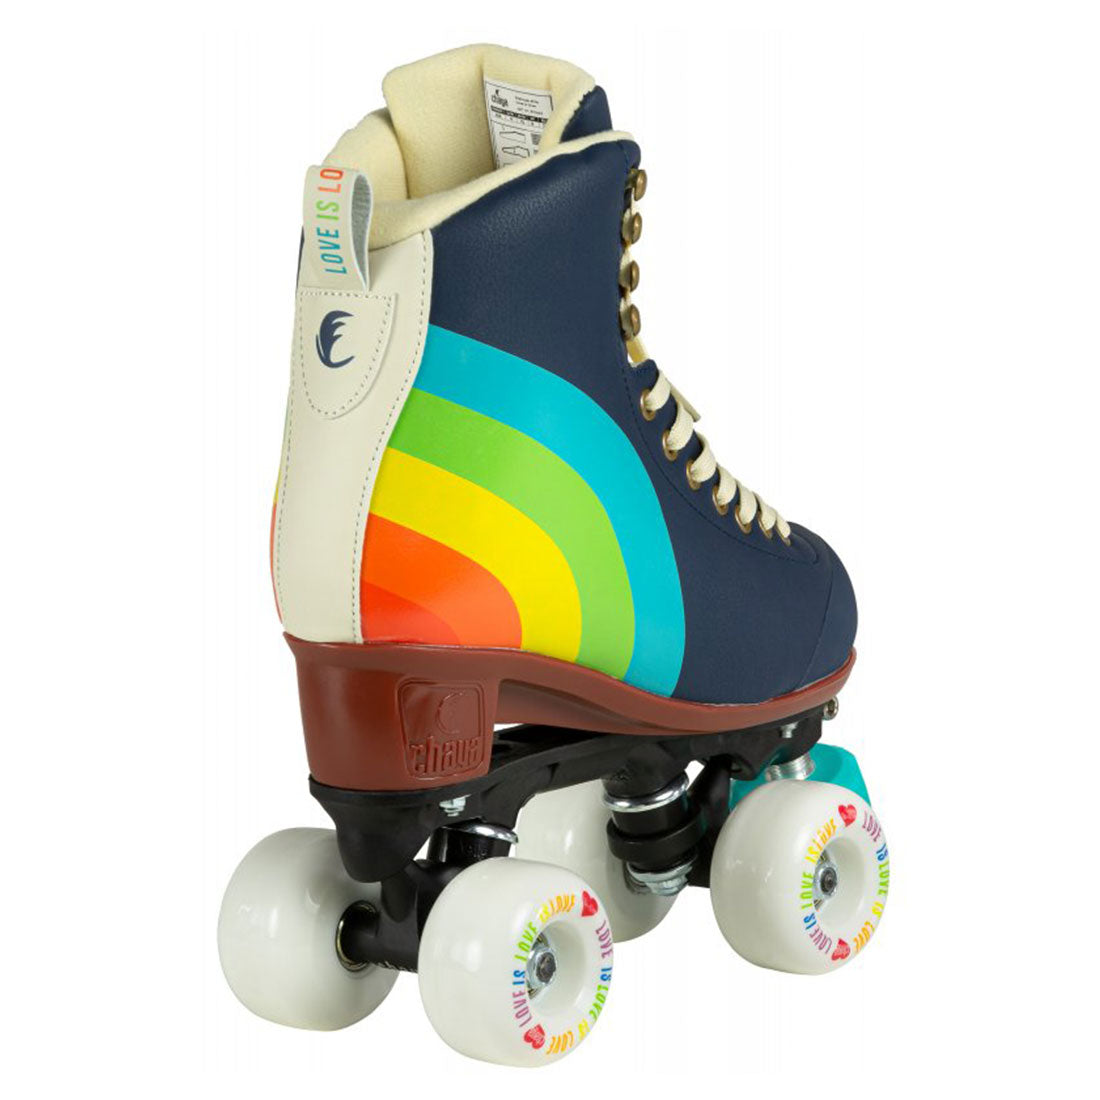 Chaya Melrose Elite Skate - Love Is Love Roller Skates